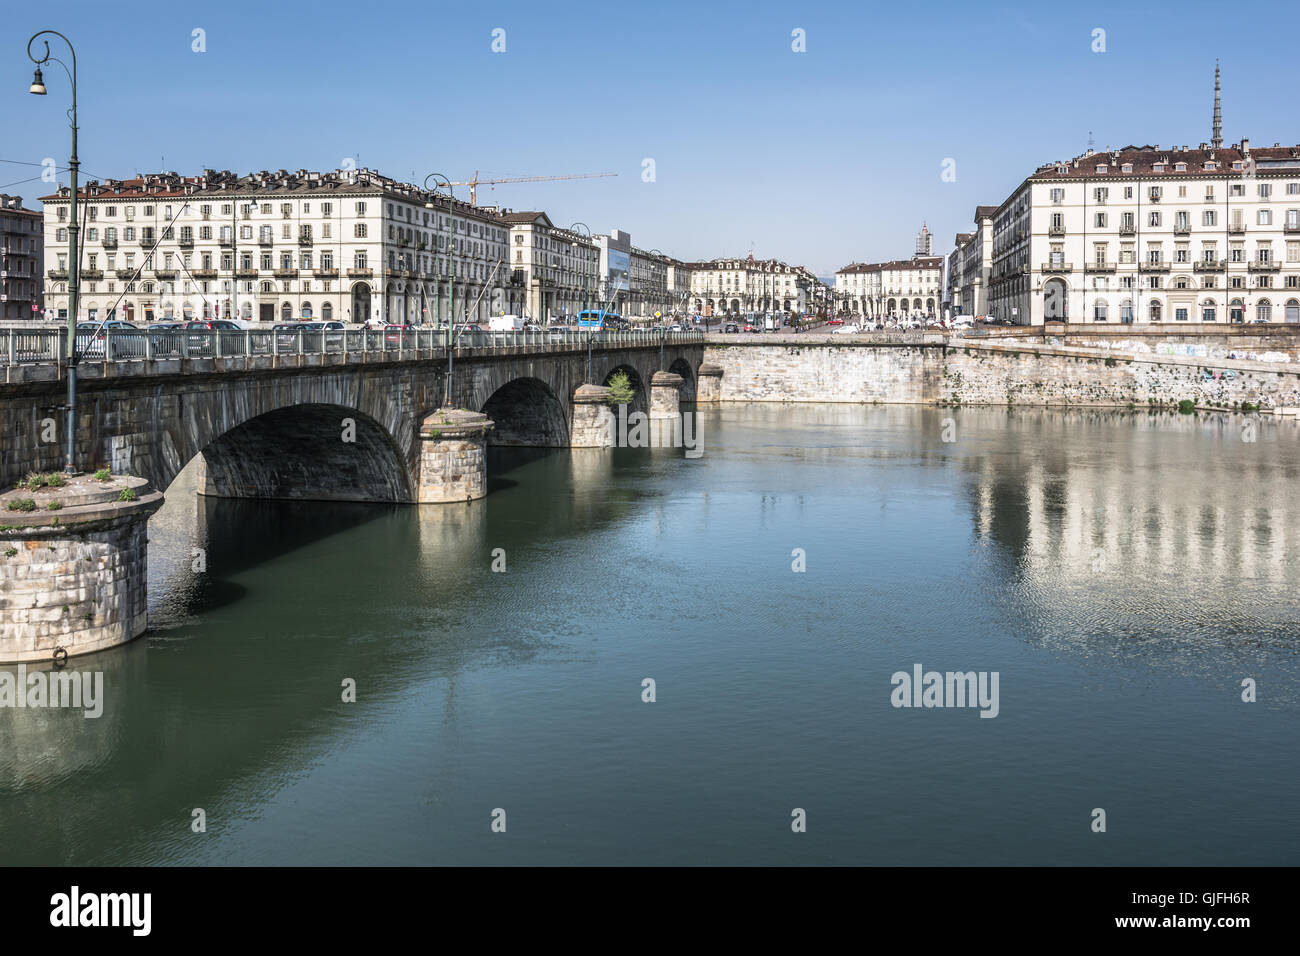 Po River and Vittorio Square in Turin, Italy Stock Photo